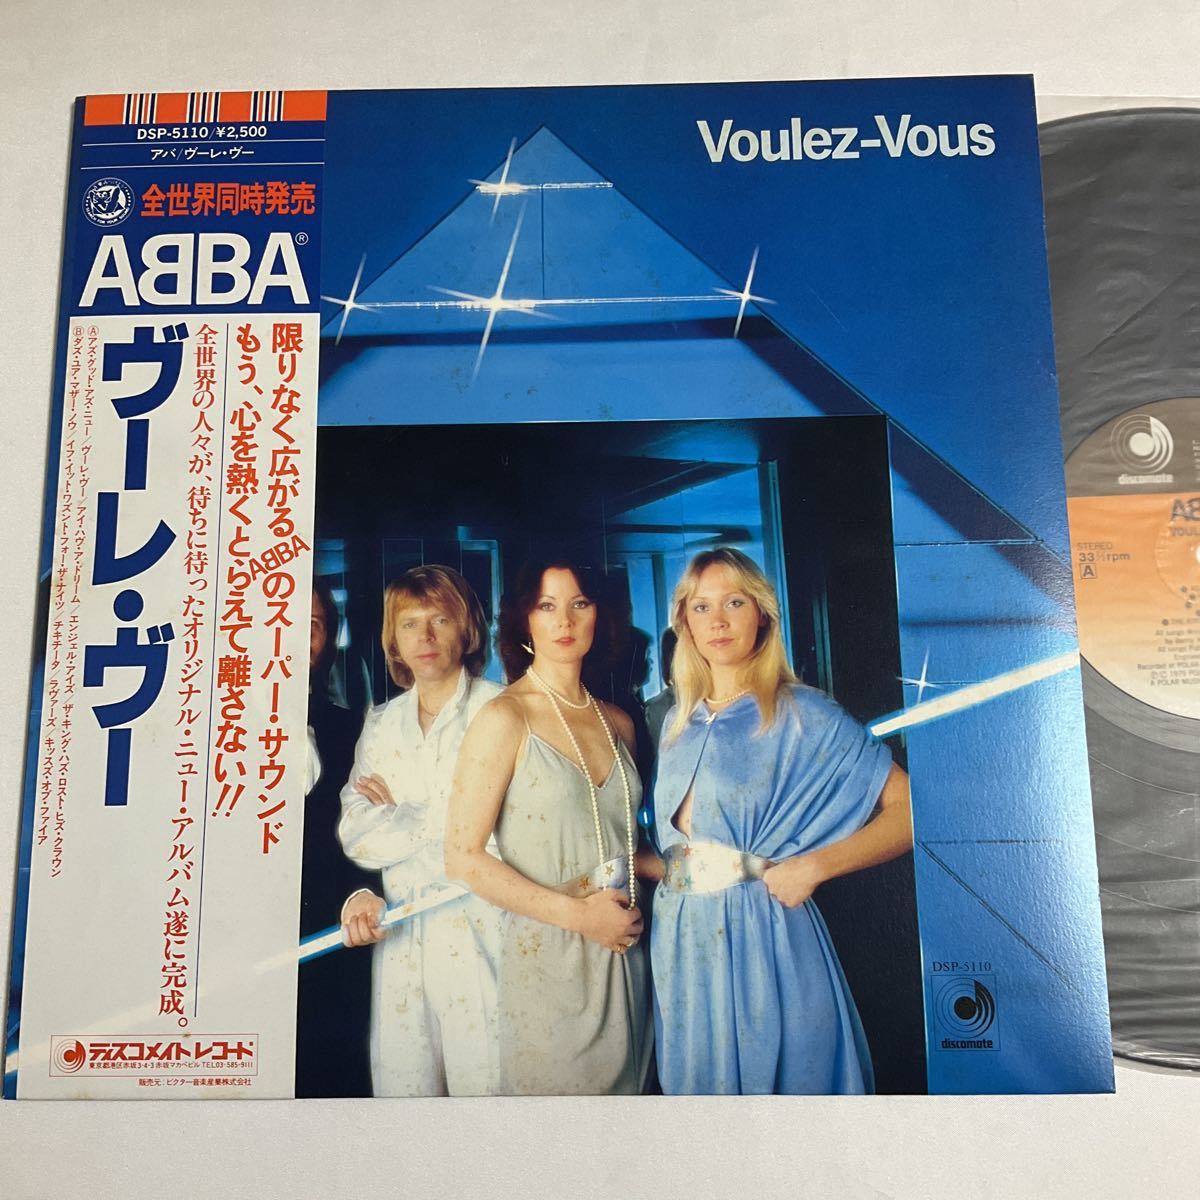 アバ / ABBA / ヴーレ ヴー / VOULEZ-BOUS / LP レコード / 1979 / 220405(ABBA)｜売買されたオークション情報、yahooの商品情報をアーカイブ公開  - オークファン（aucfan.com）